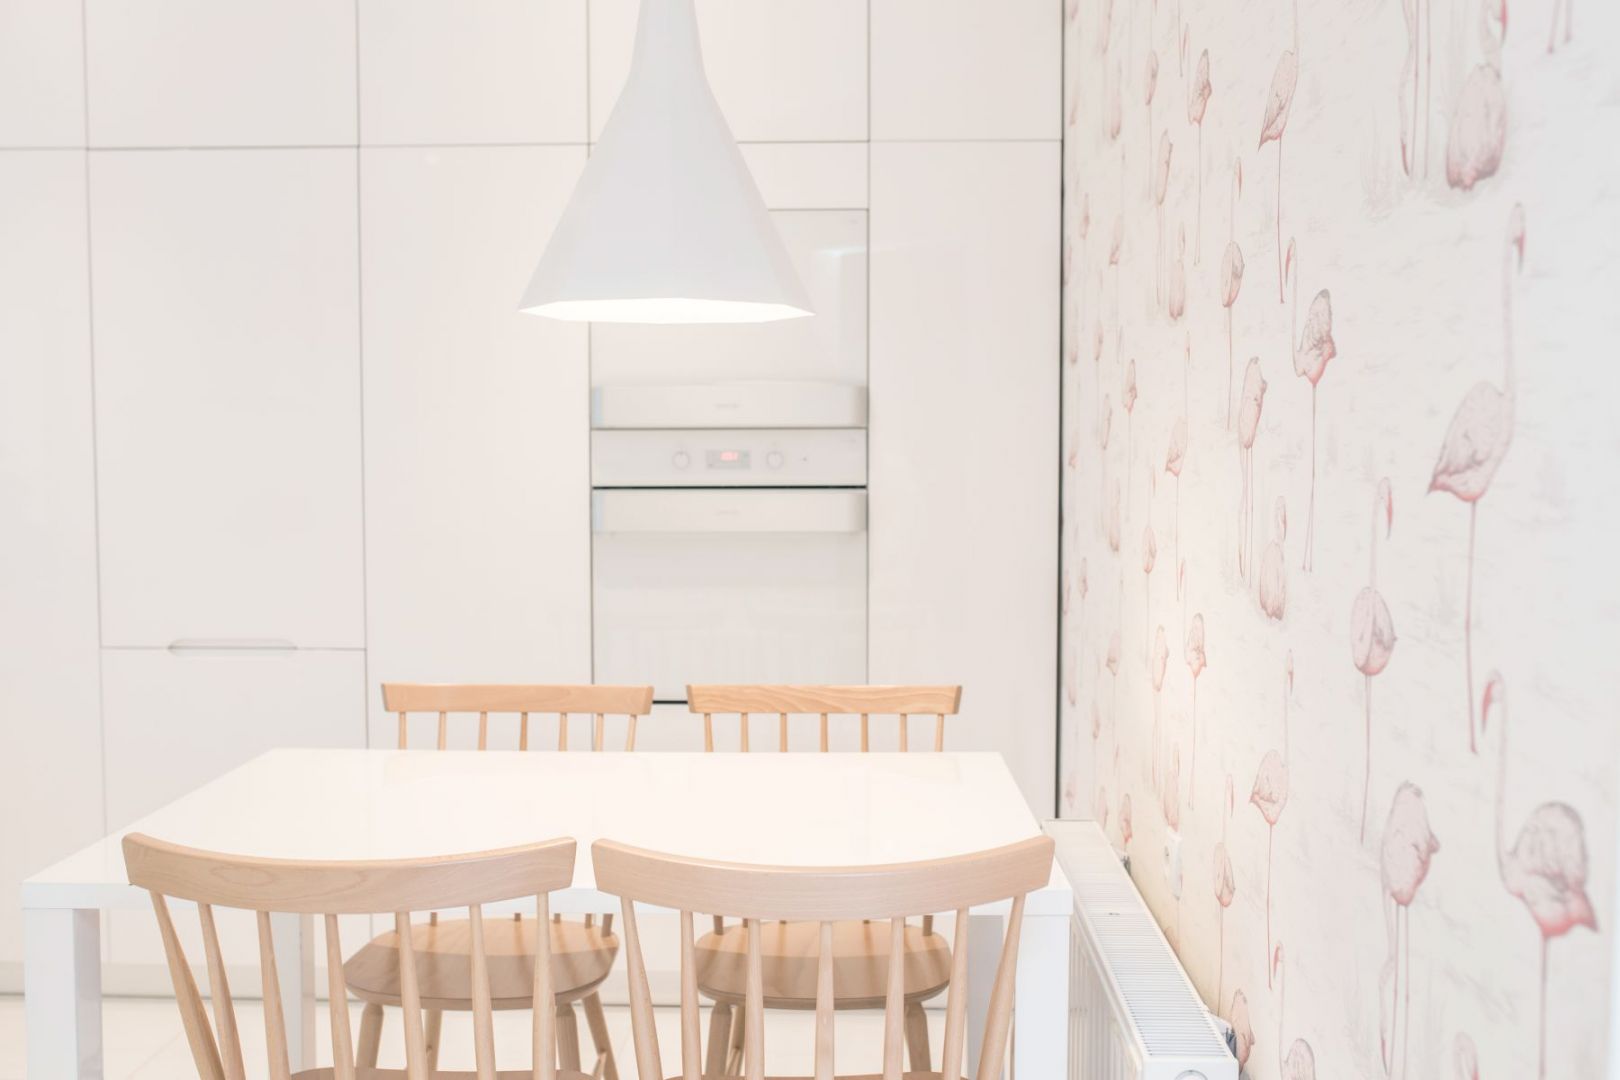 Projekt wnętrza: Louba. W tym mieszkaniu dominuje biel i jasne odcienie drewna. Taka jest też kuchnia - jasna, rozświetlona, romantyczna...